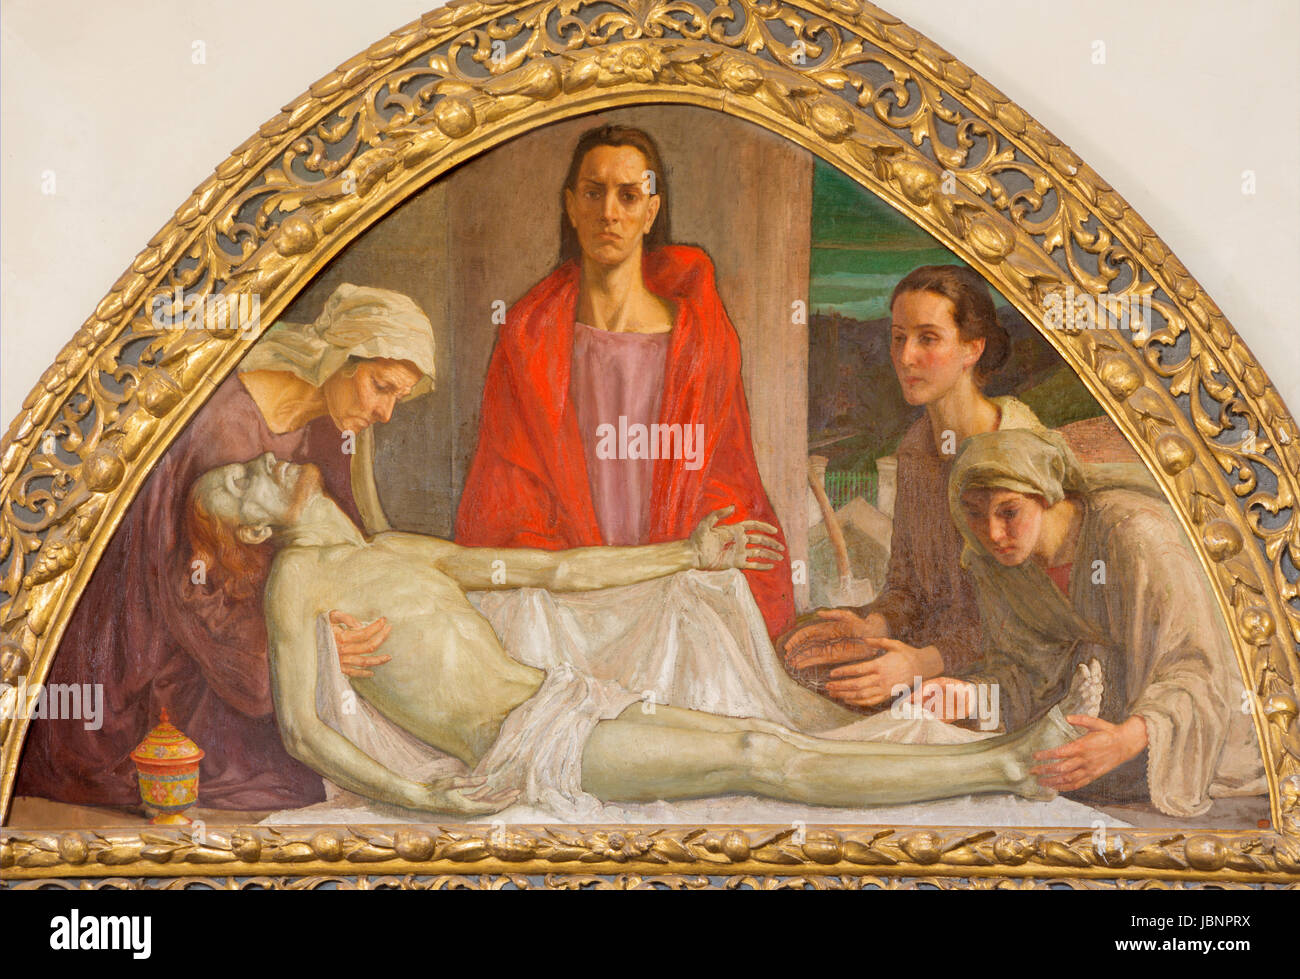 TURIN, Italien - 13. März 2017: Das Fresko des Todes Jesu mit der Mutter, Frauen und Johannes der Evangelist in Cattedrale di San Giovanni Battista von Stockfoto